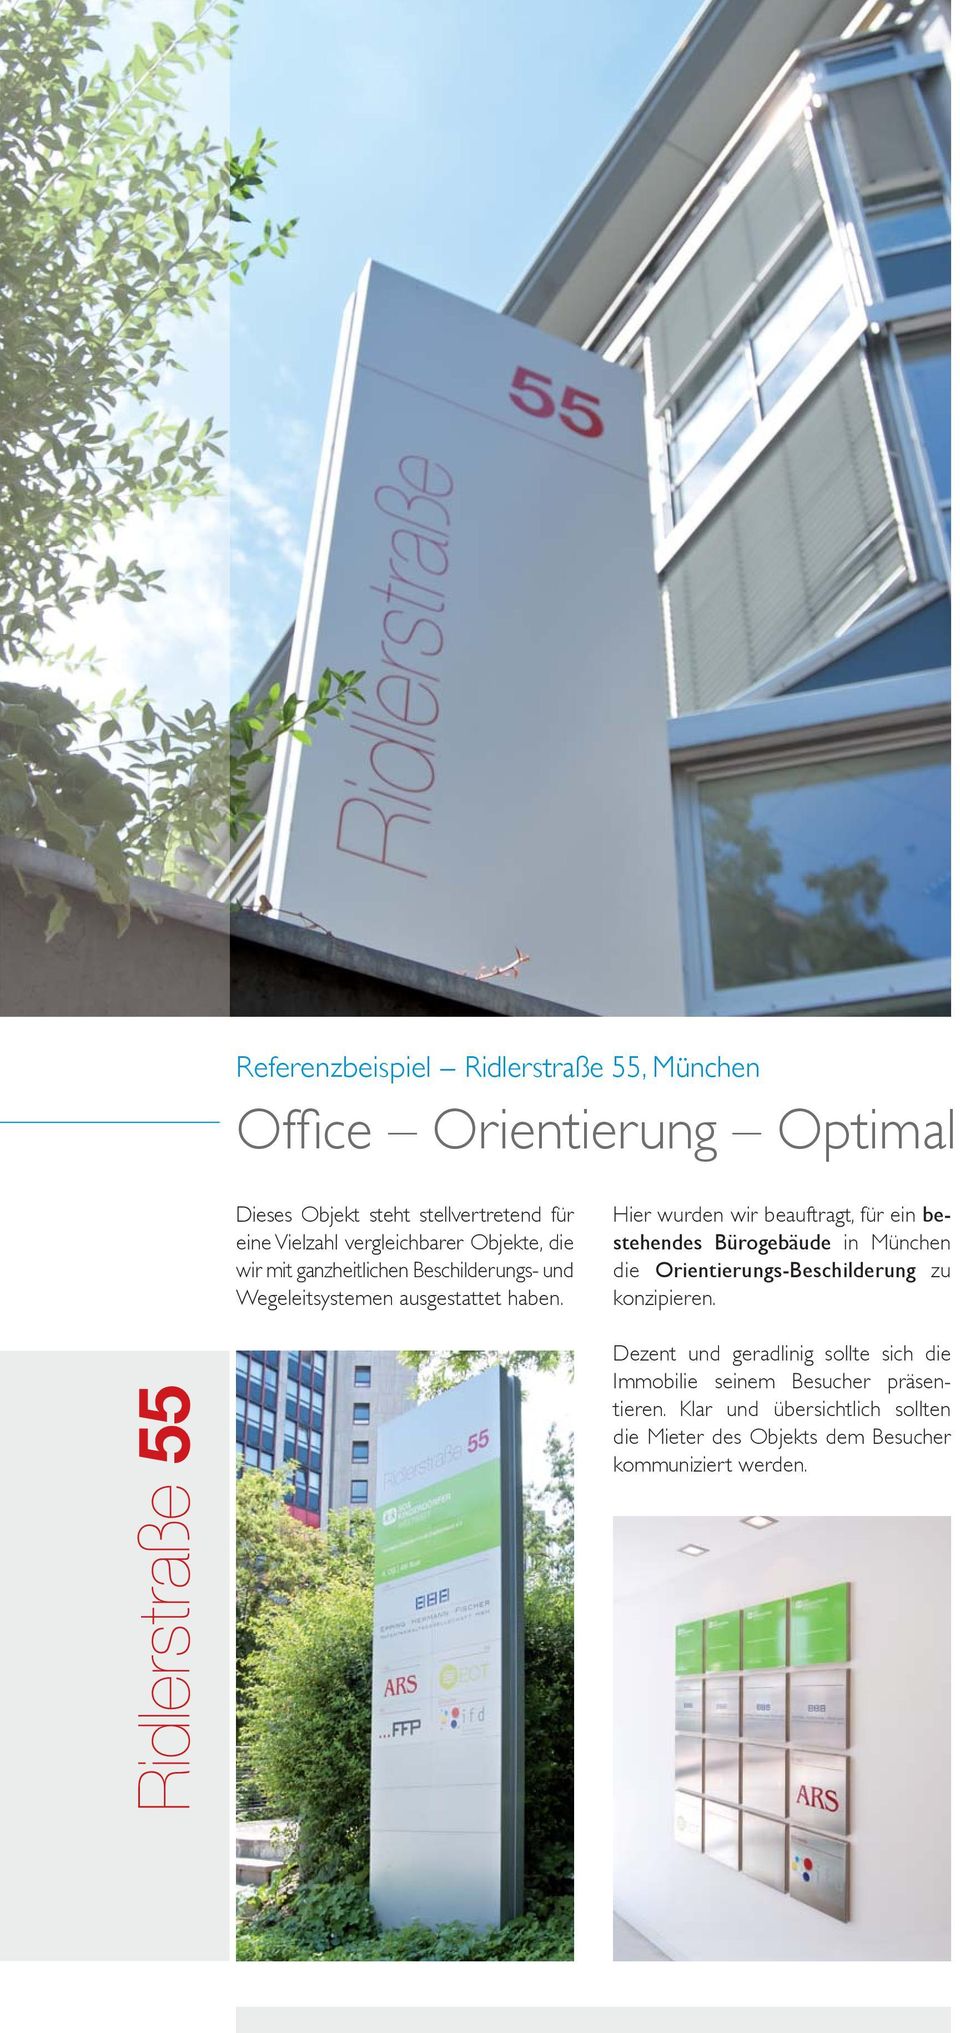 Hier wurden wir beauftragt, für ein bestehendes Bürogebäude in München die Orientierungs-Beschilderung zu konzipieren.